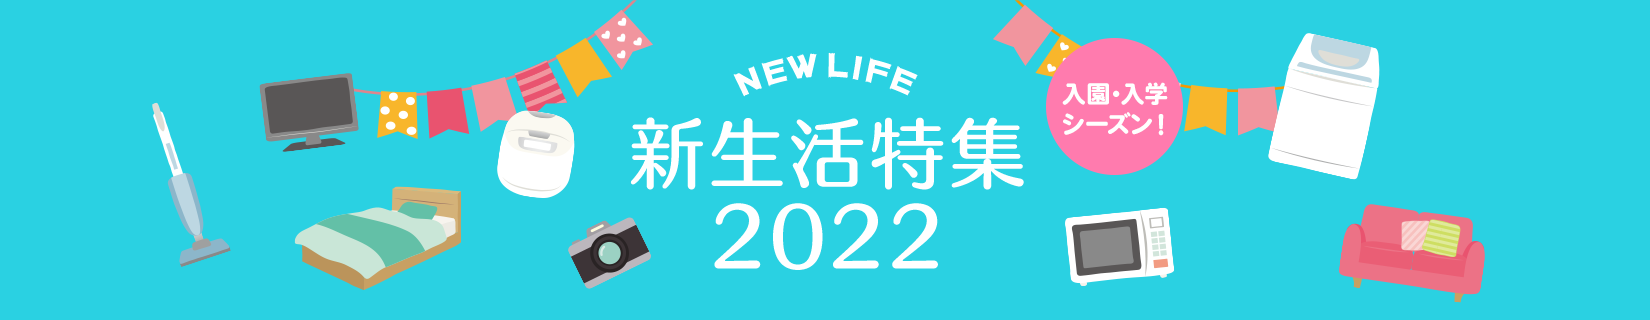 新生活特集2022